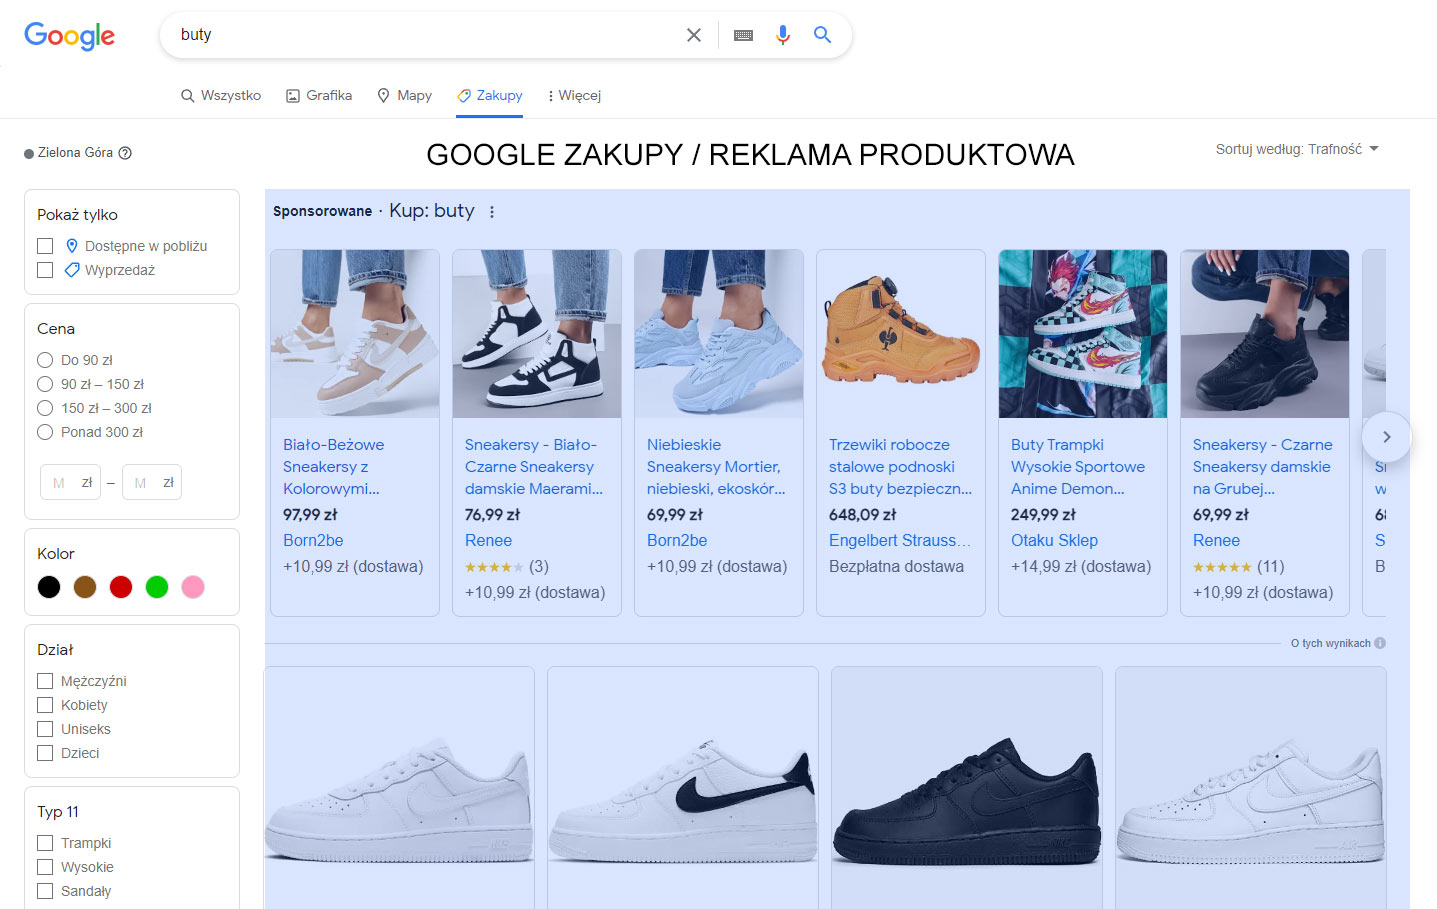 Google Zakupy reklama produktowa dla sklepów internetowych